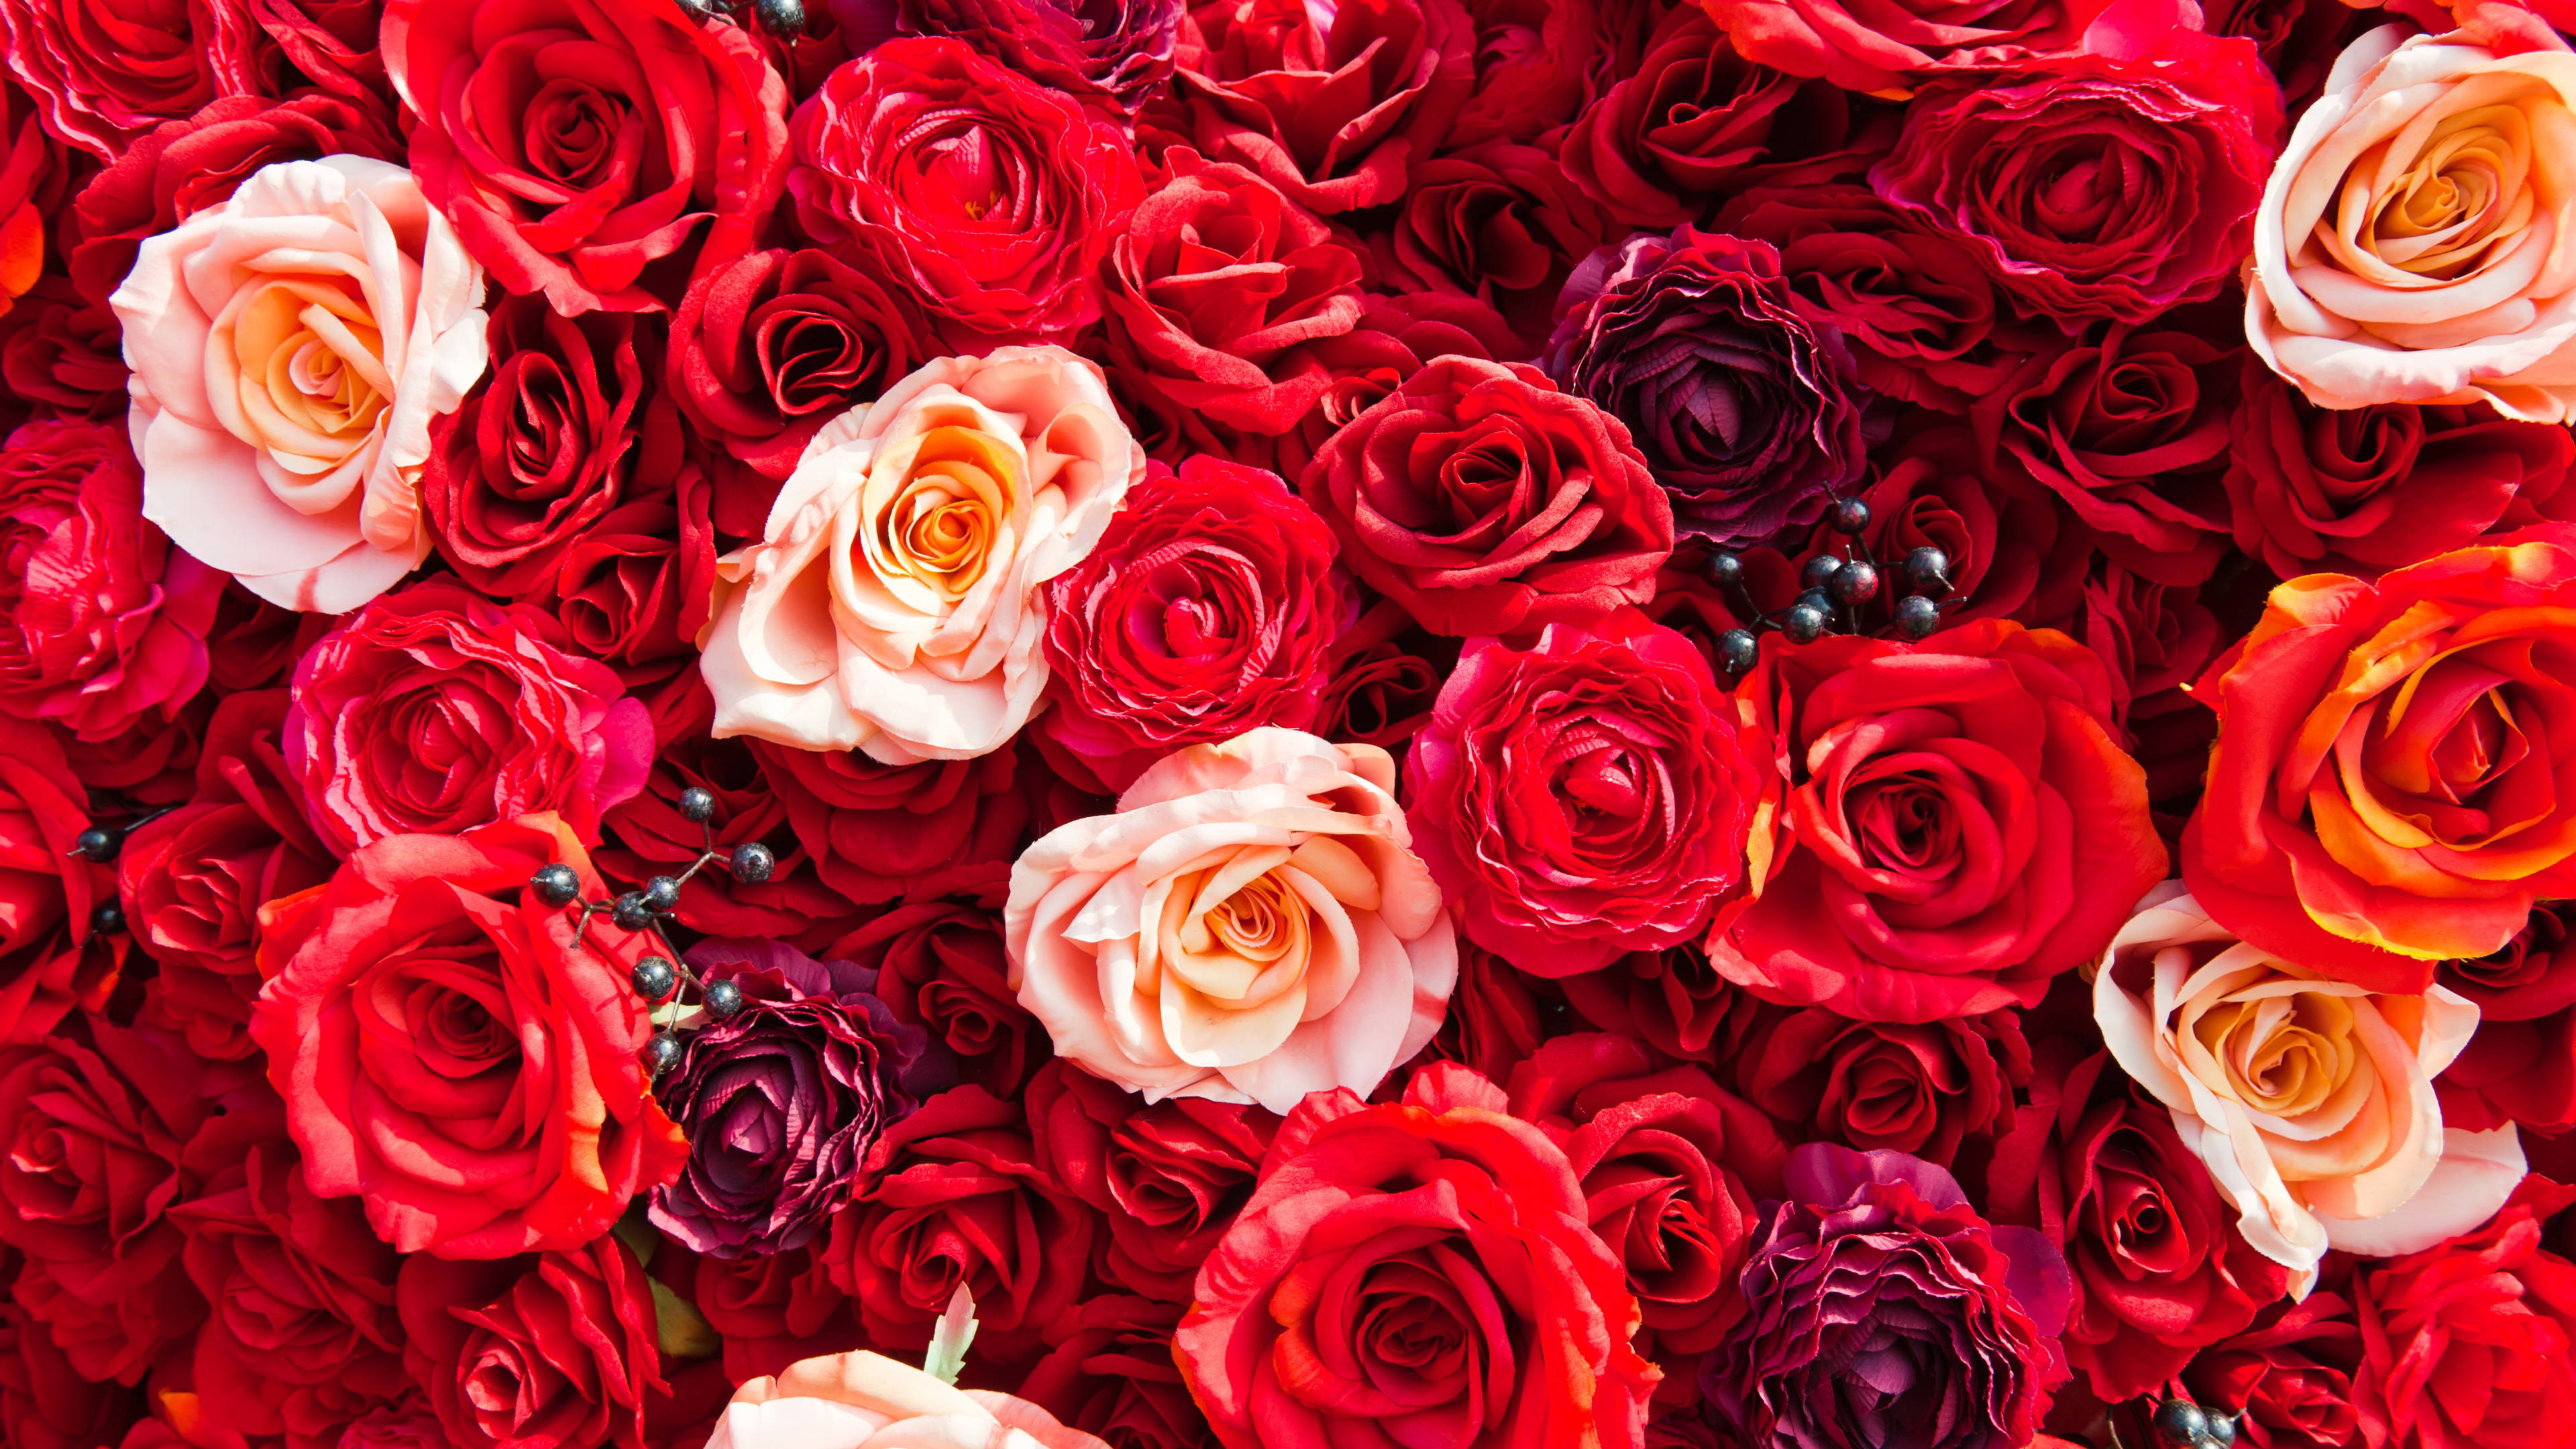 玫瑰花园, 红色的, 玫瑰家庭, 切花, 创造性的艺术 壁纸 3840x2160 允许